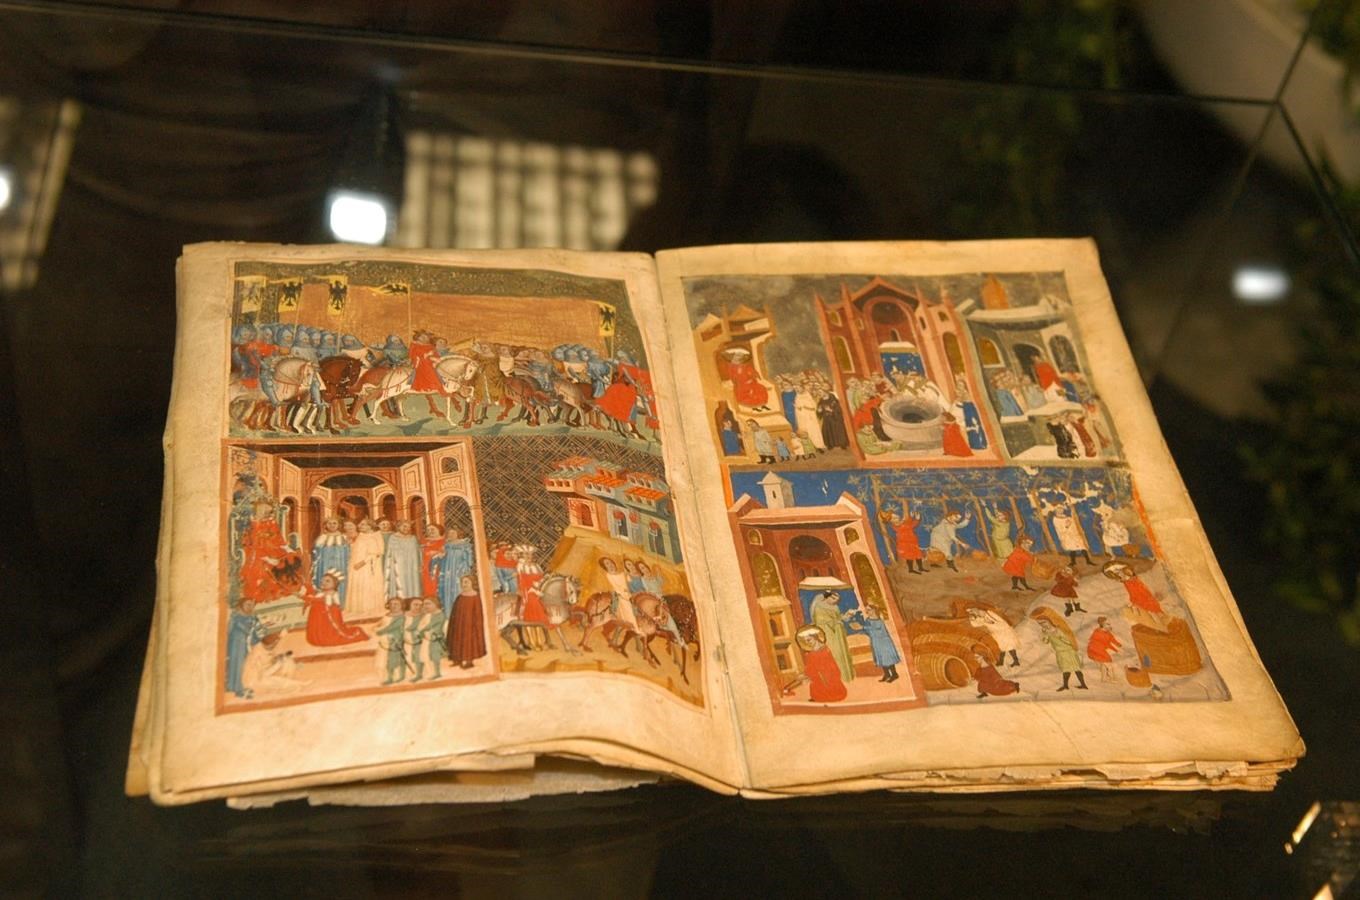 V Klementinu bude na 1. máje vystaven vzácný překlad Dalimilovy kroniky